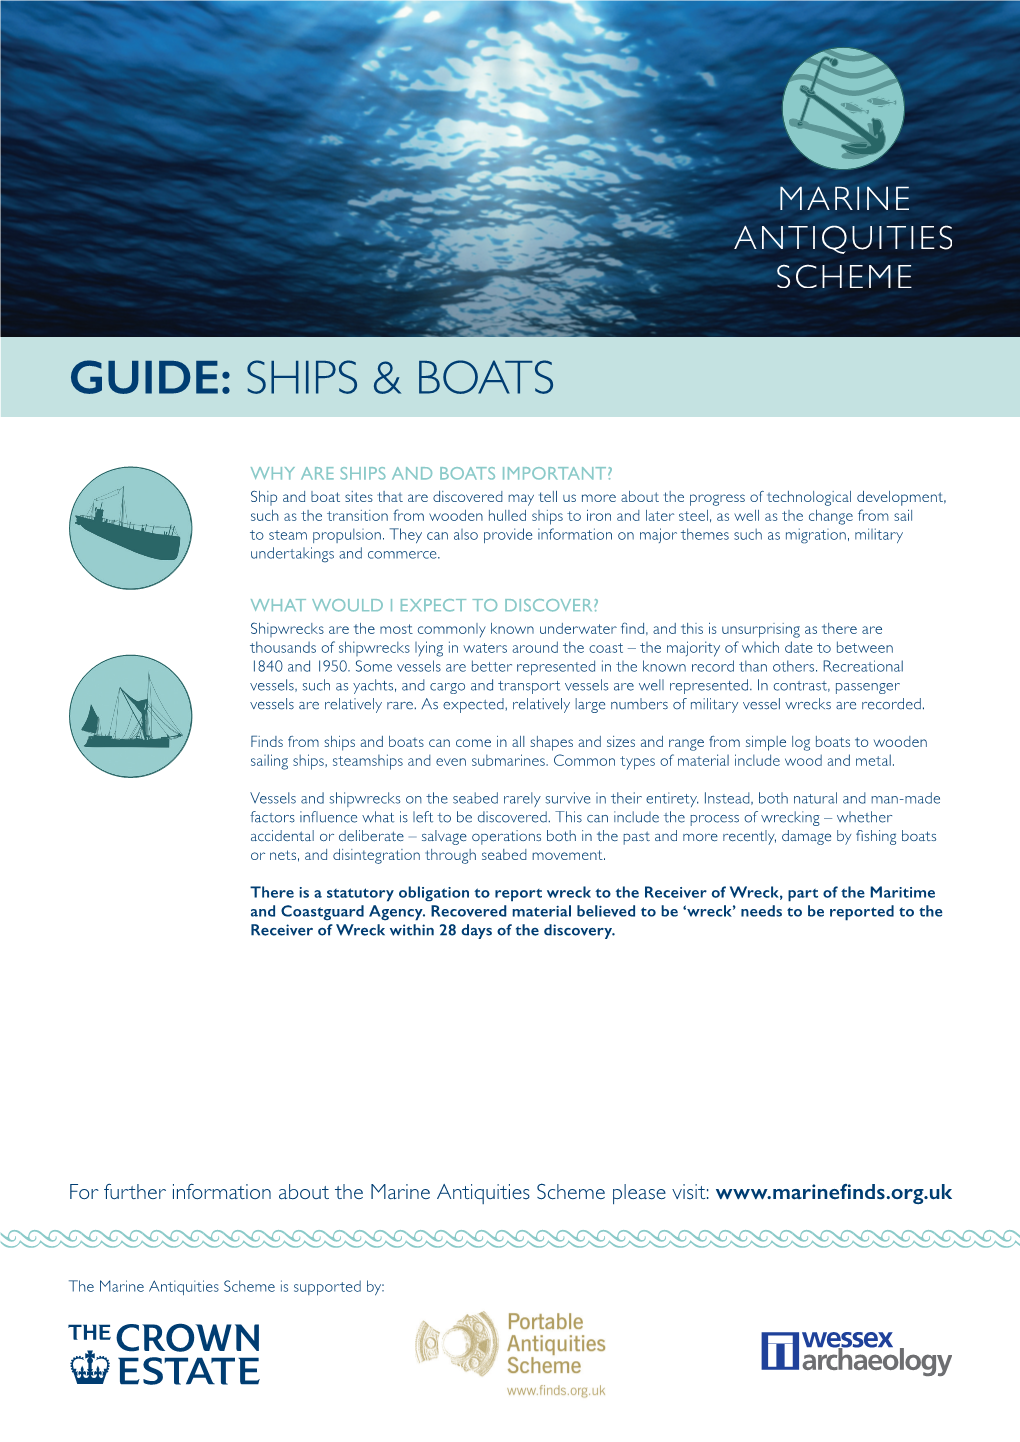 Guide: Ships & Boats